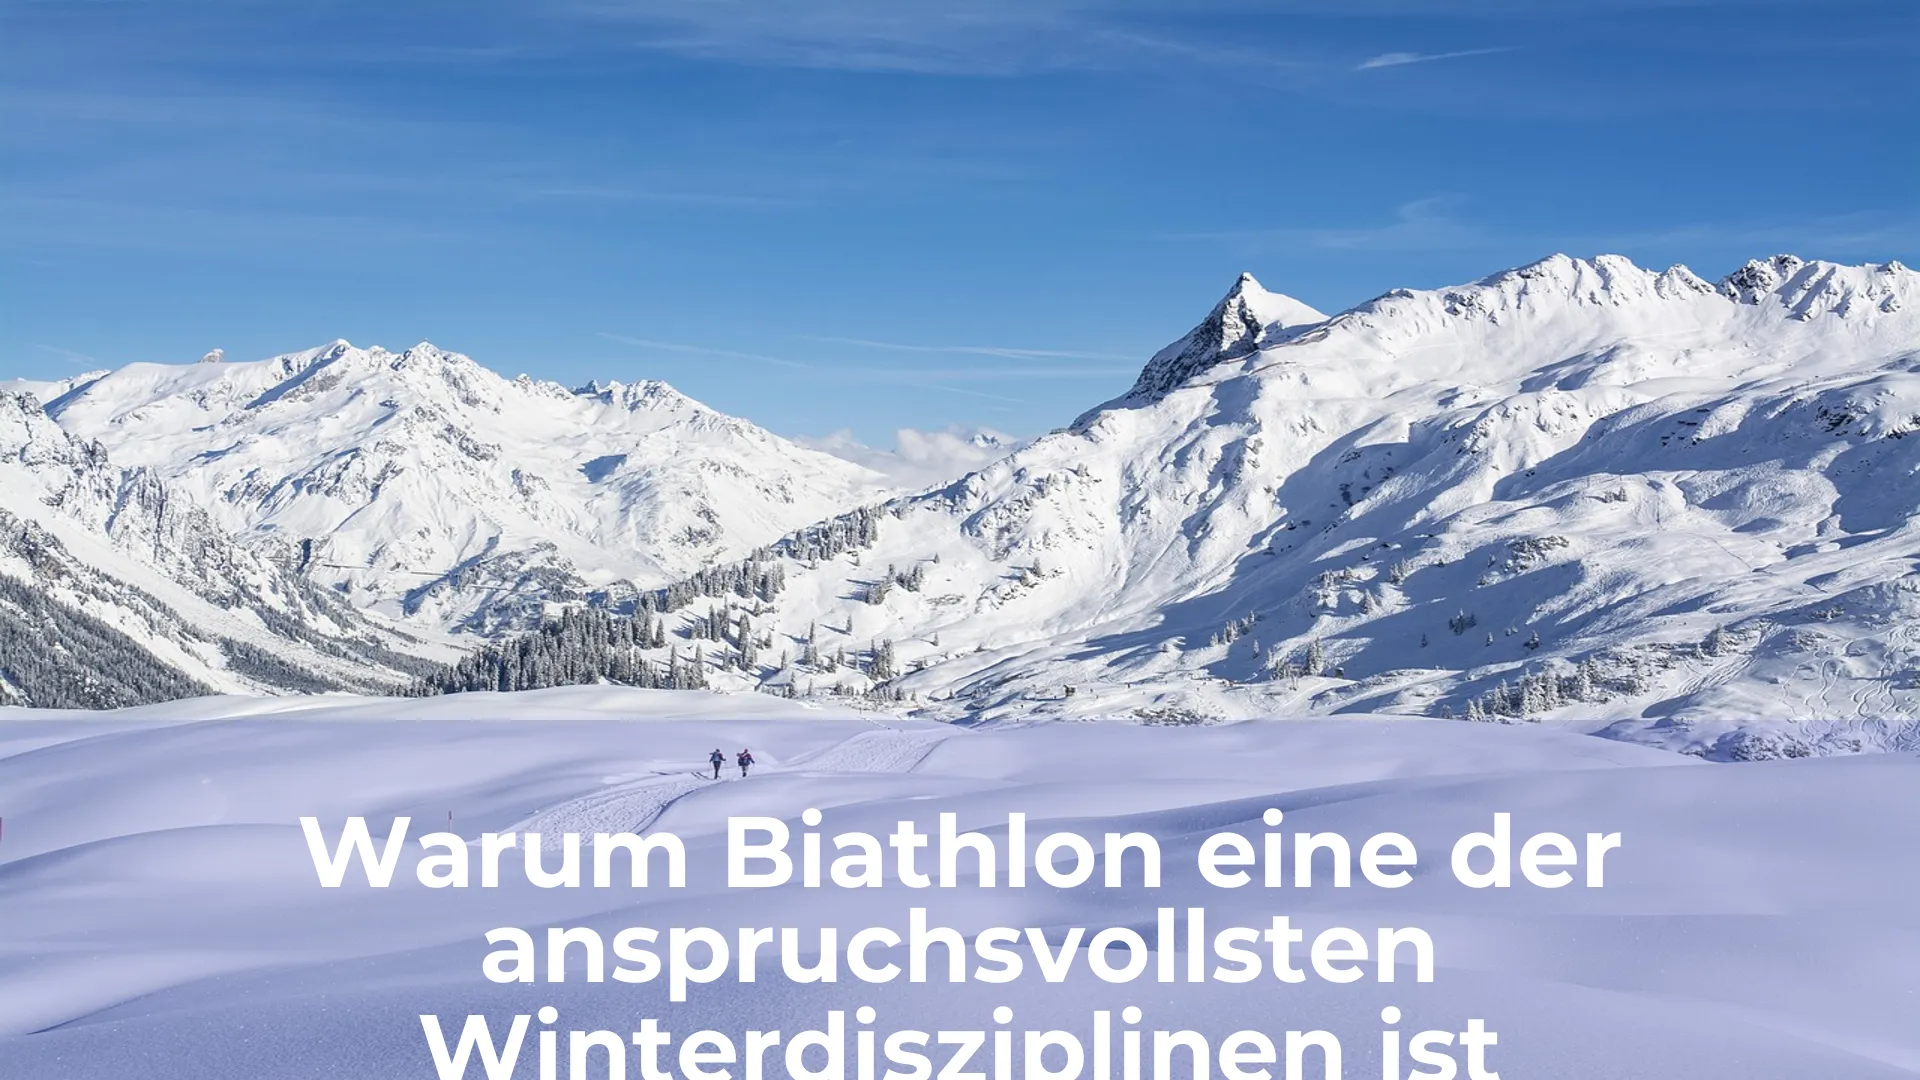 Warum biathlon eine der anspruchsvollsten winterdisziplinen ist